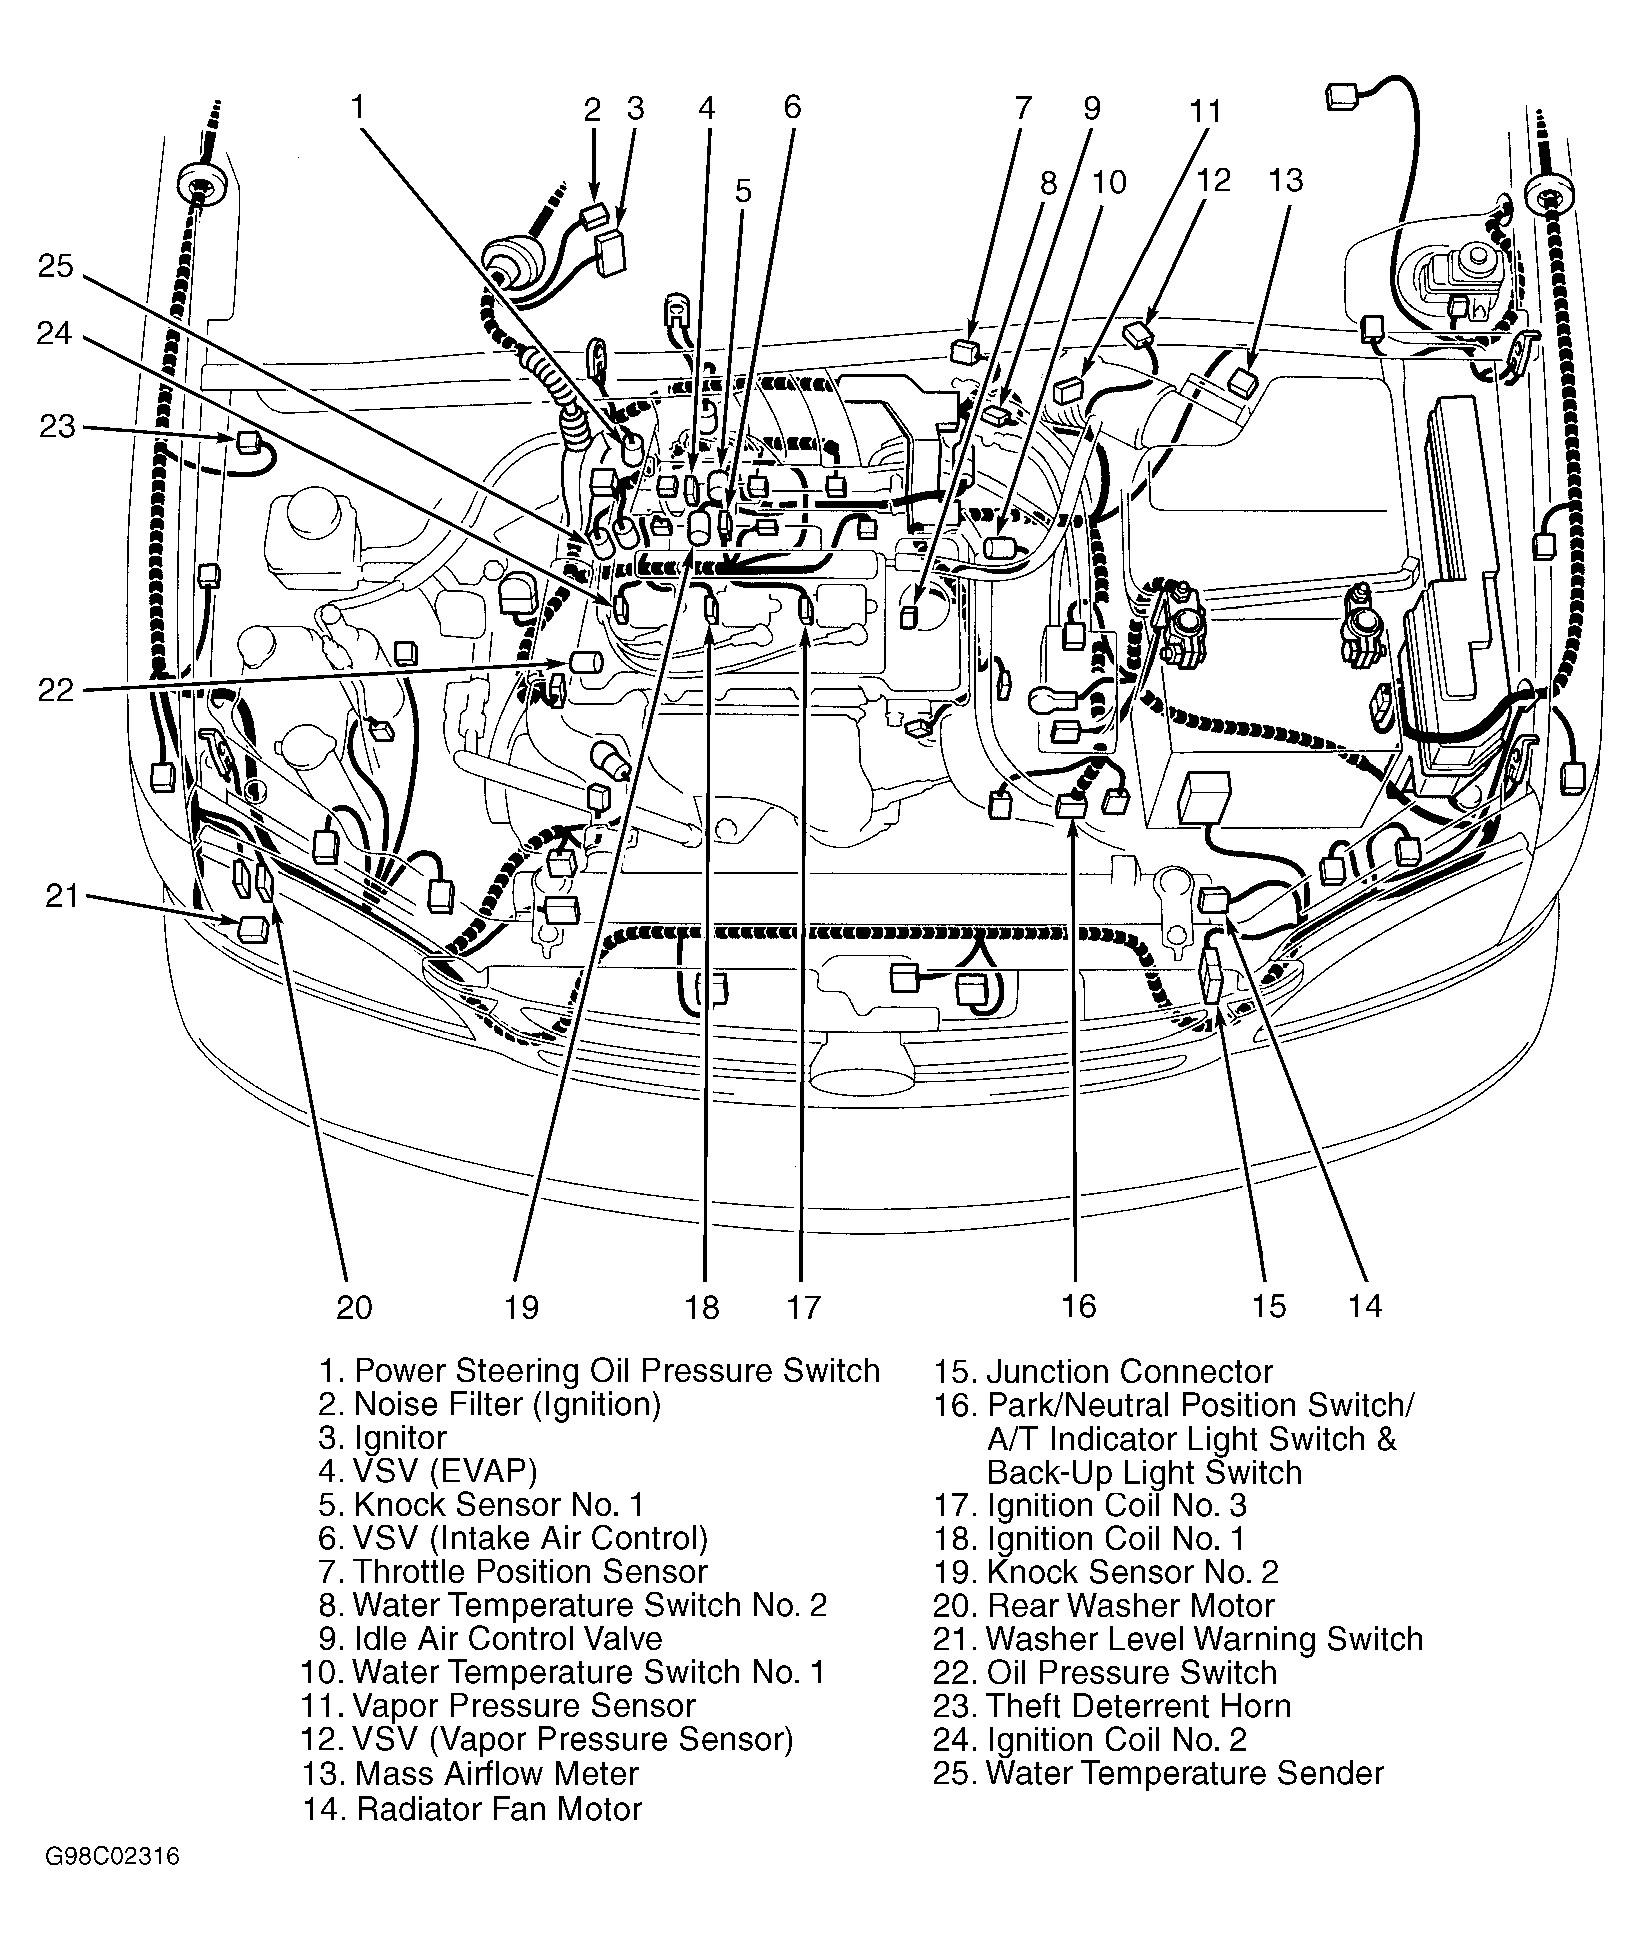 2001 toyota Tundra Parts Diagram 2001 toyota Tundra Engine Diagram Wiring Diagram Paper Of 2001 toyota Tundra Parts Diagram